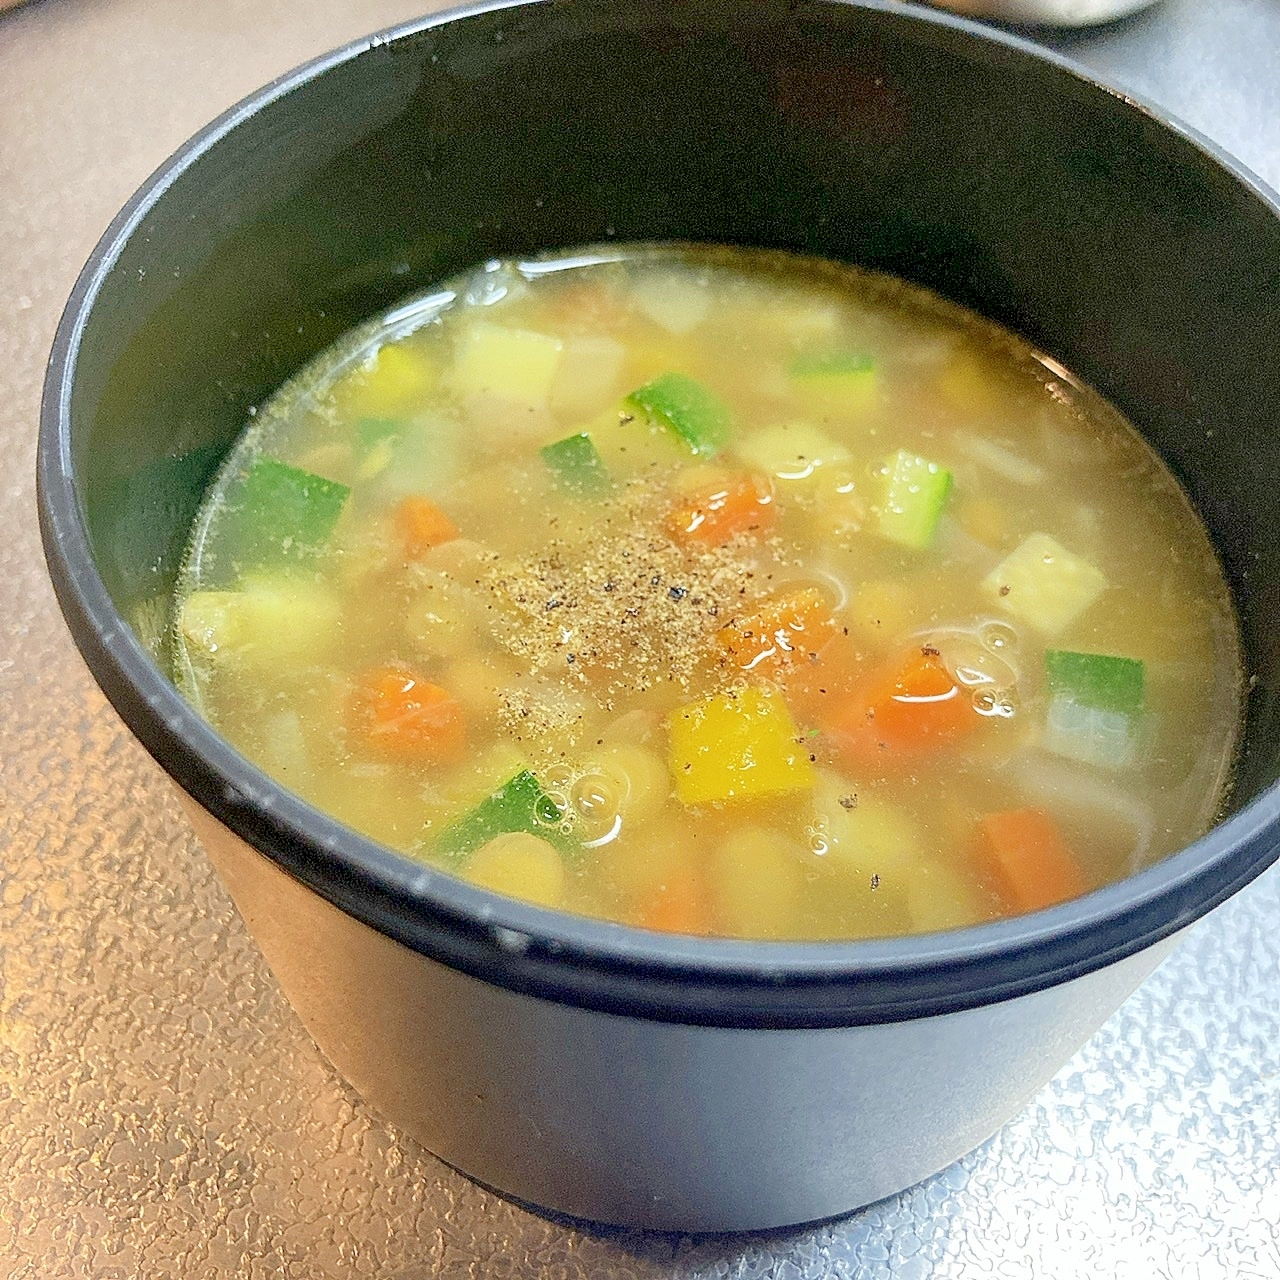 つぶつぶ☆レンズ豆と野菜のスープ